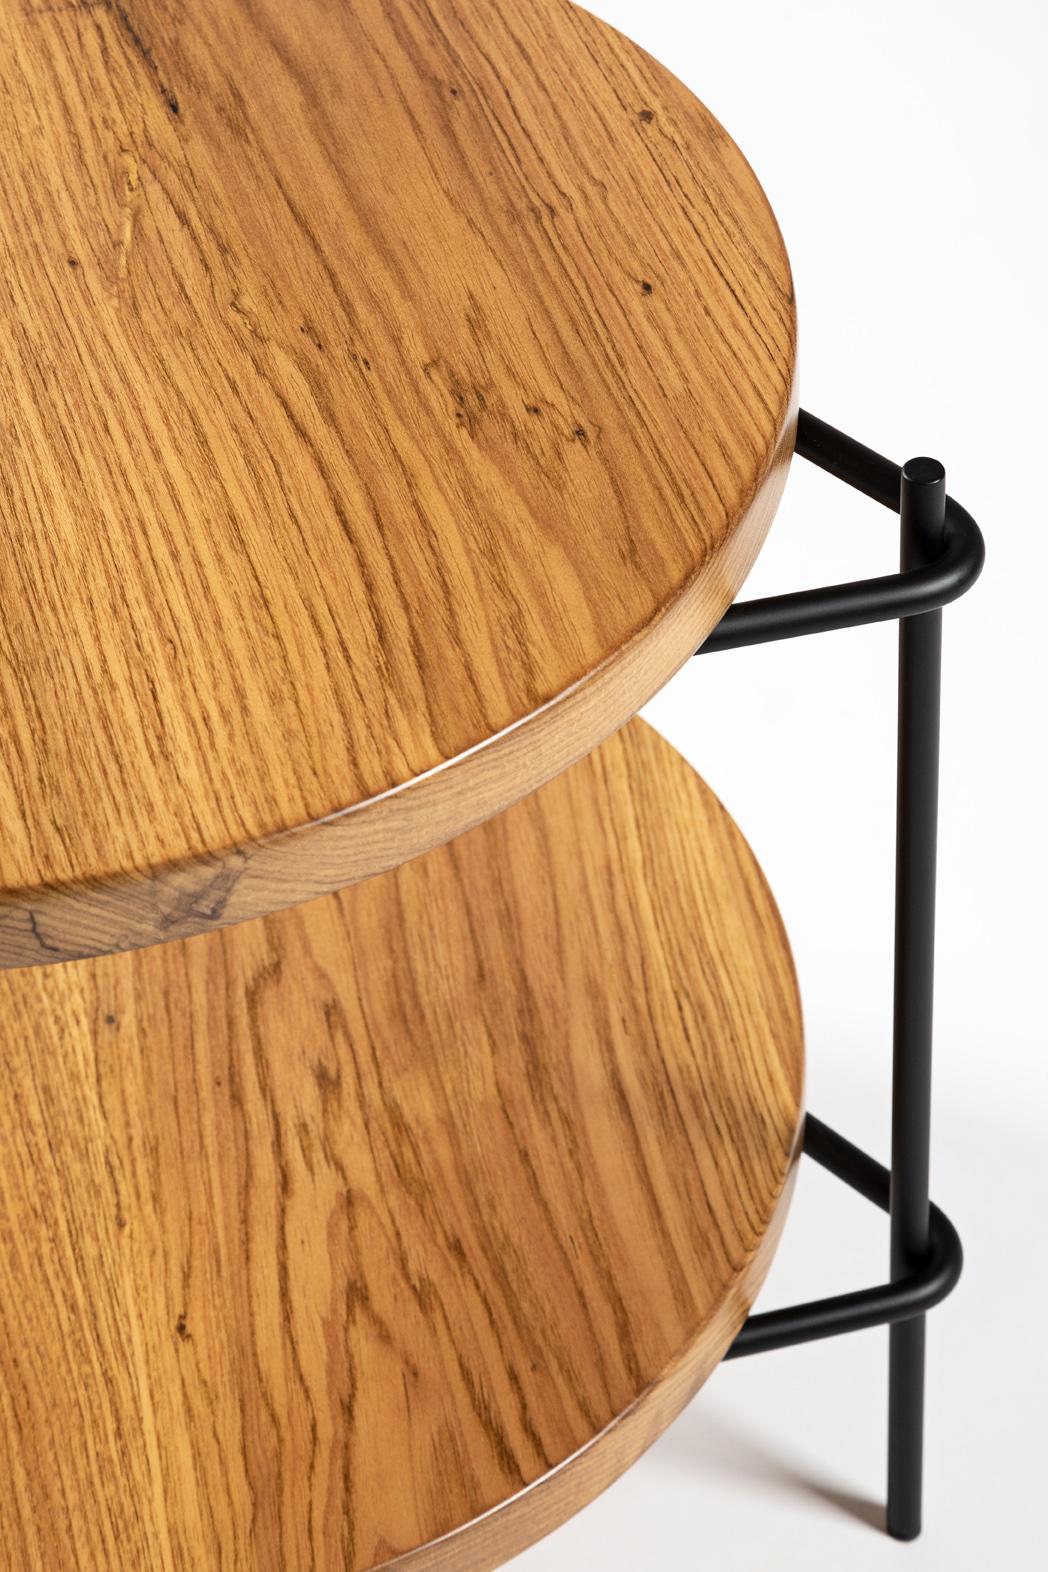 Dieser vielseitige, minimalistische Beistelltisch aus brasilianischem Massivholz 